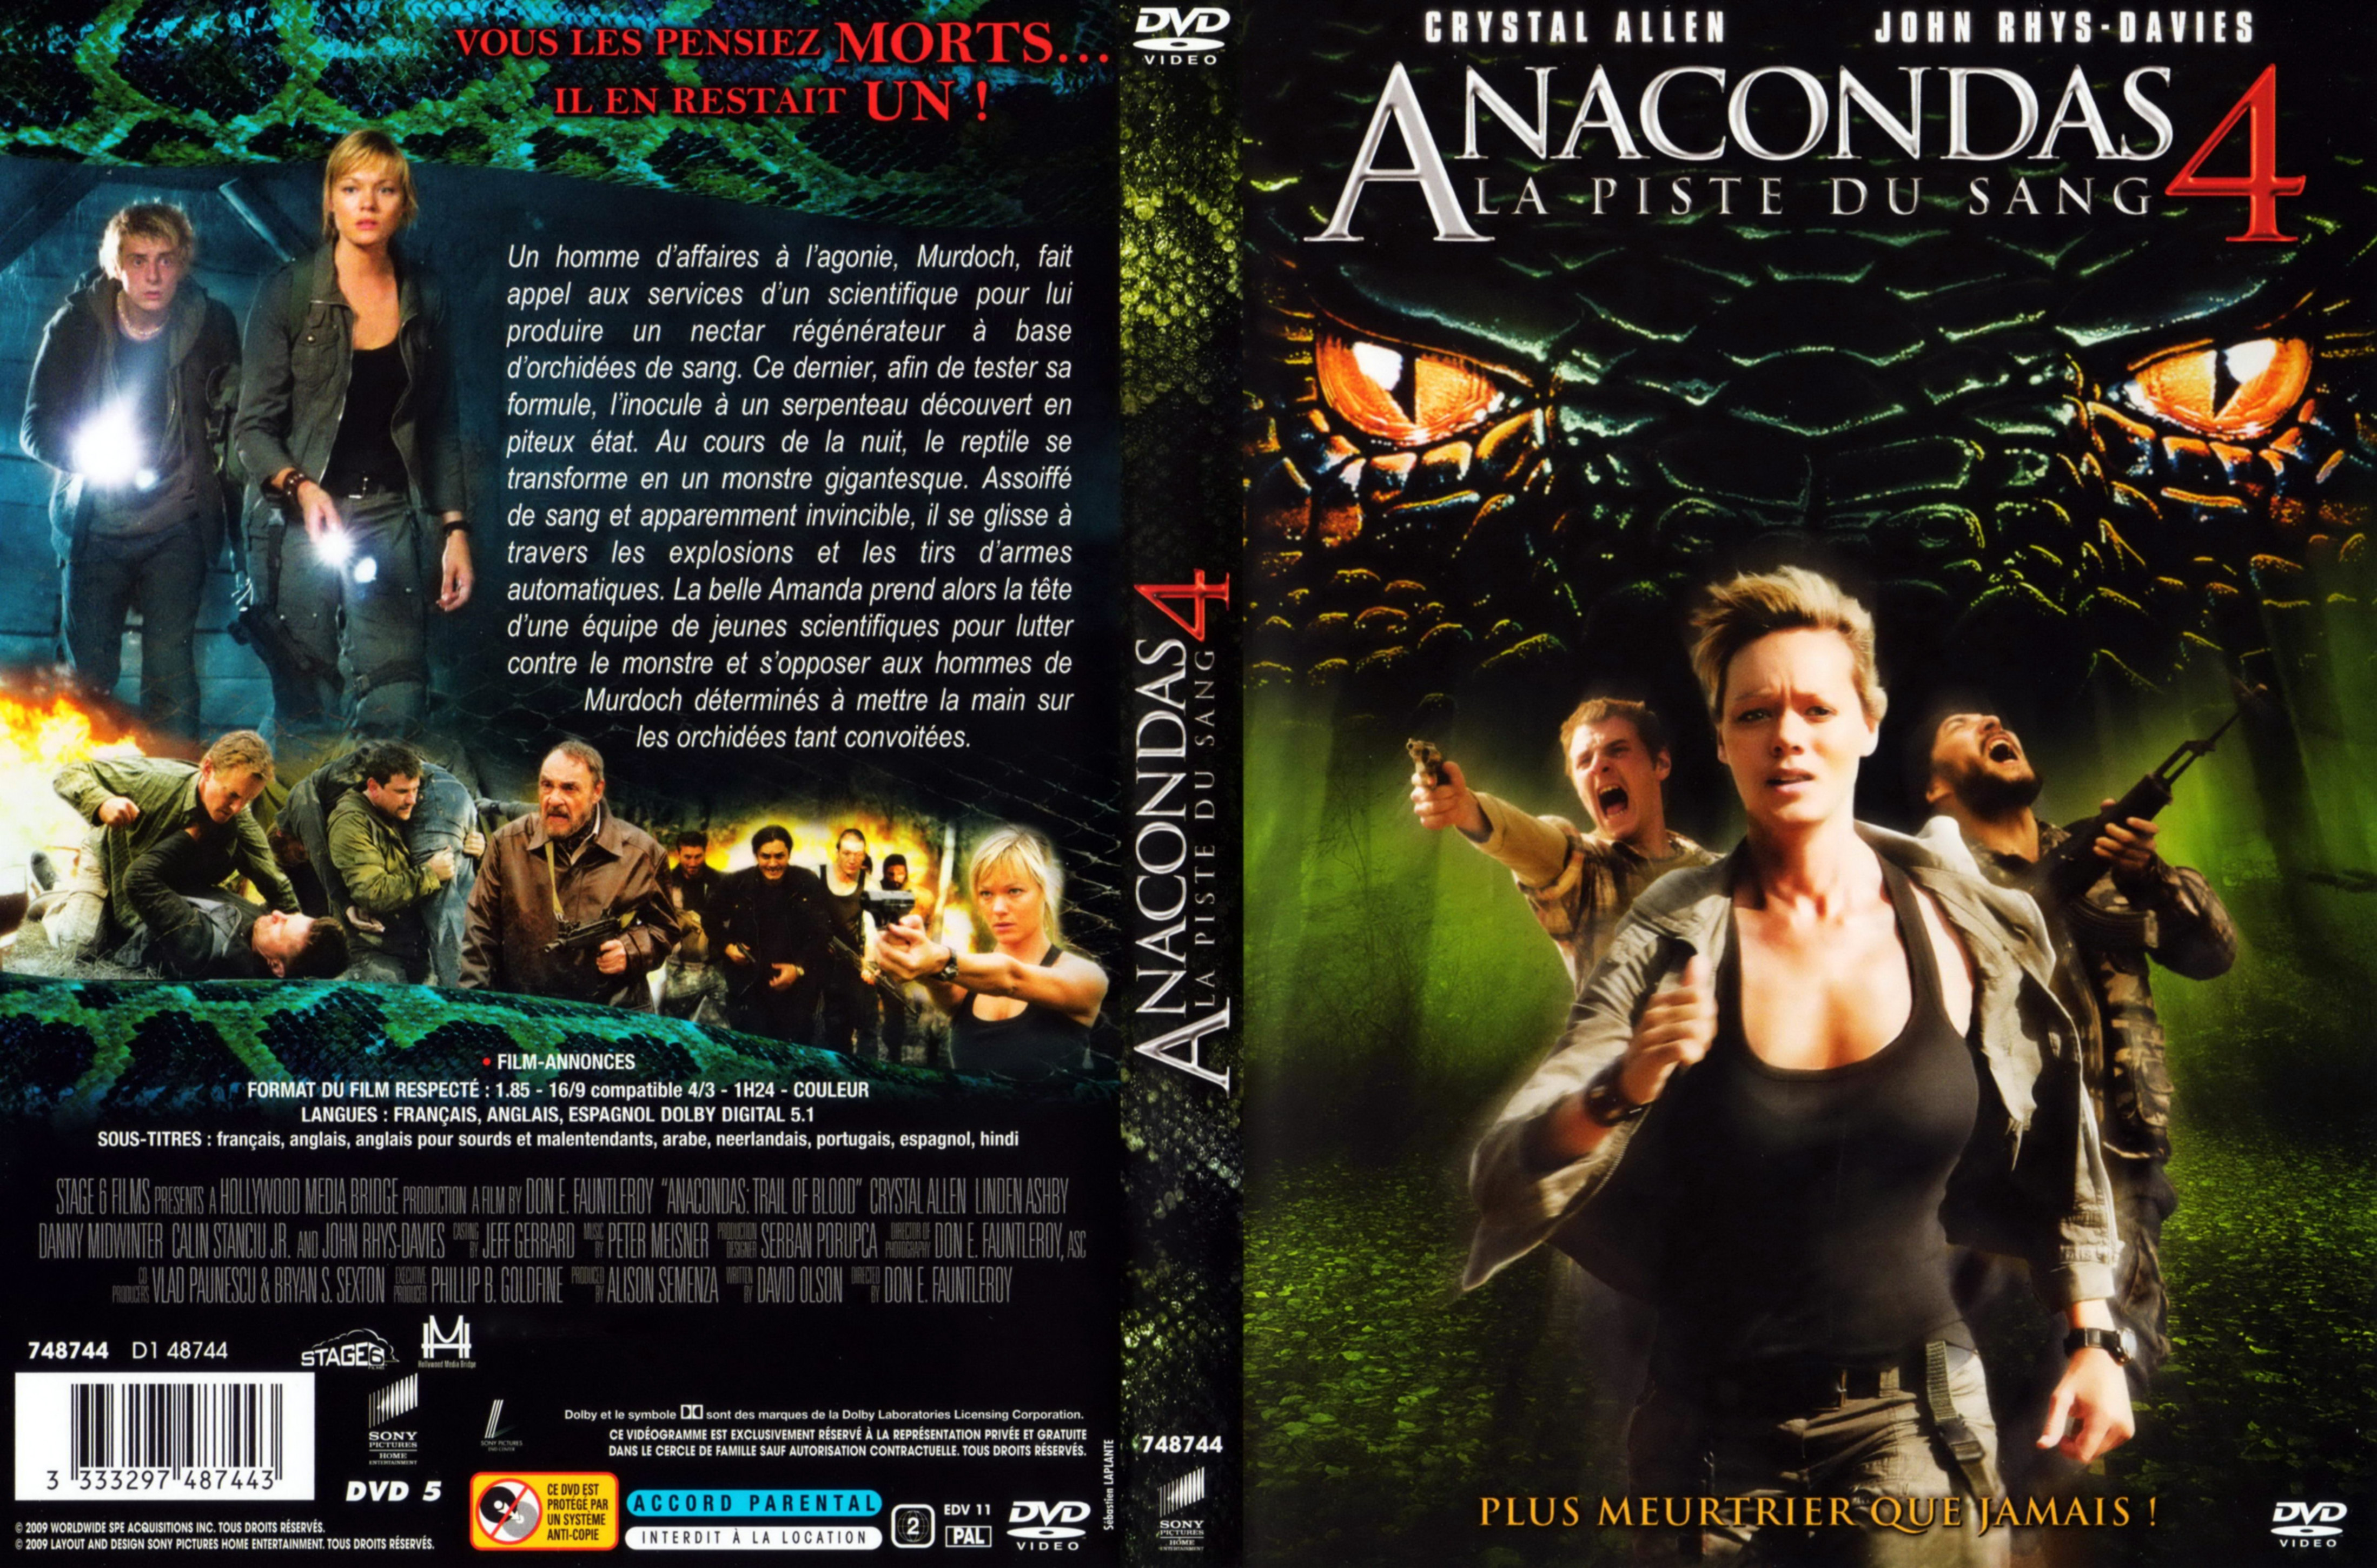 Jaquette DVD Anacondas 4 La piste du sang